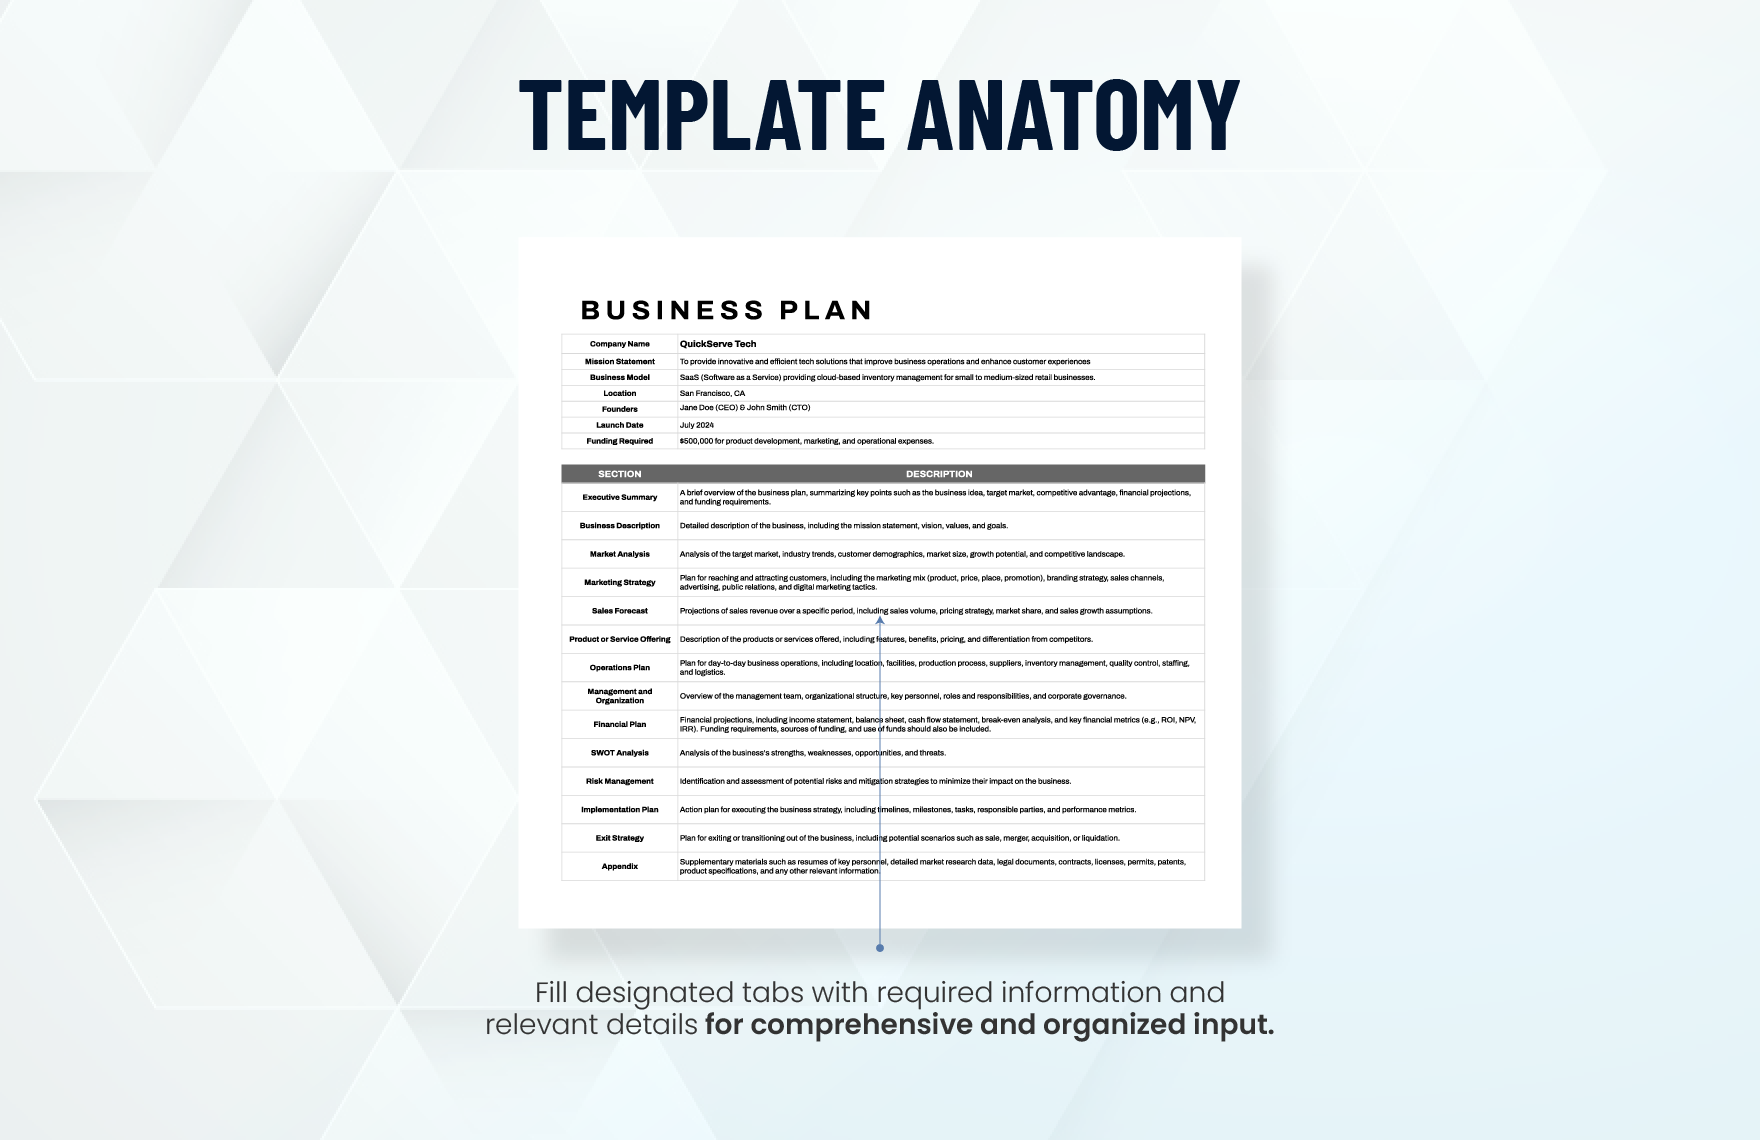 Printable Business Plan Template